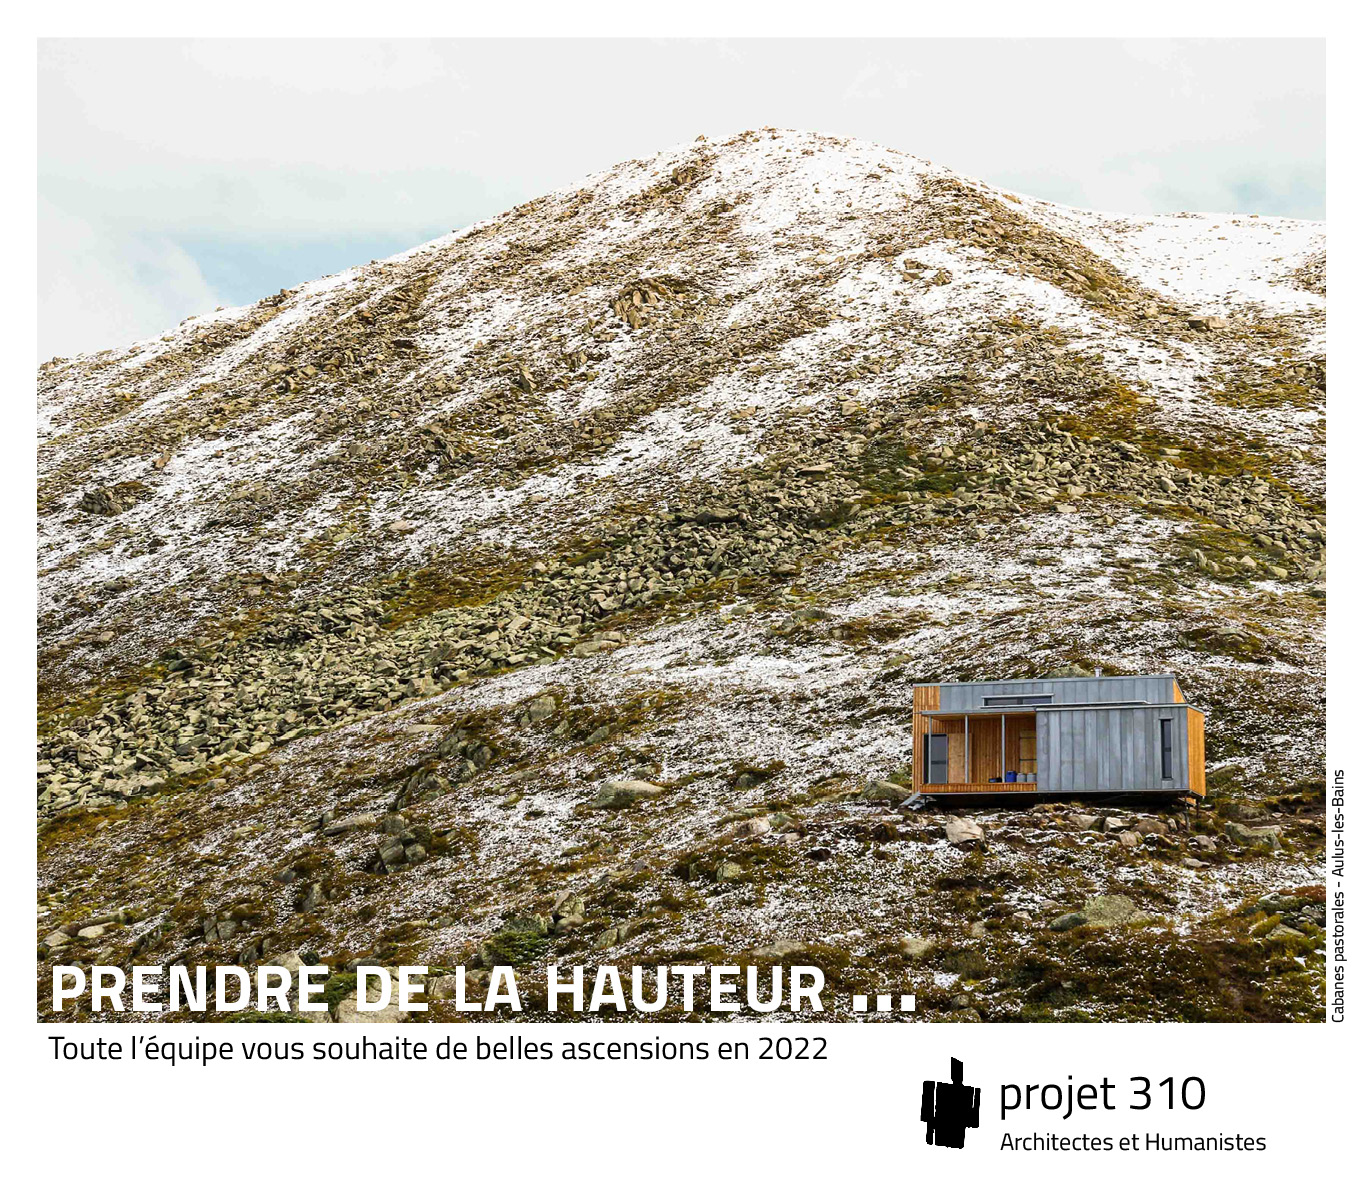 Installation de cabanes pastorales dans les hautes montagnes d'Ariège